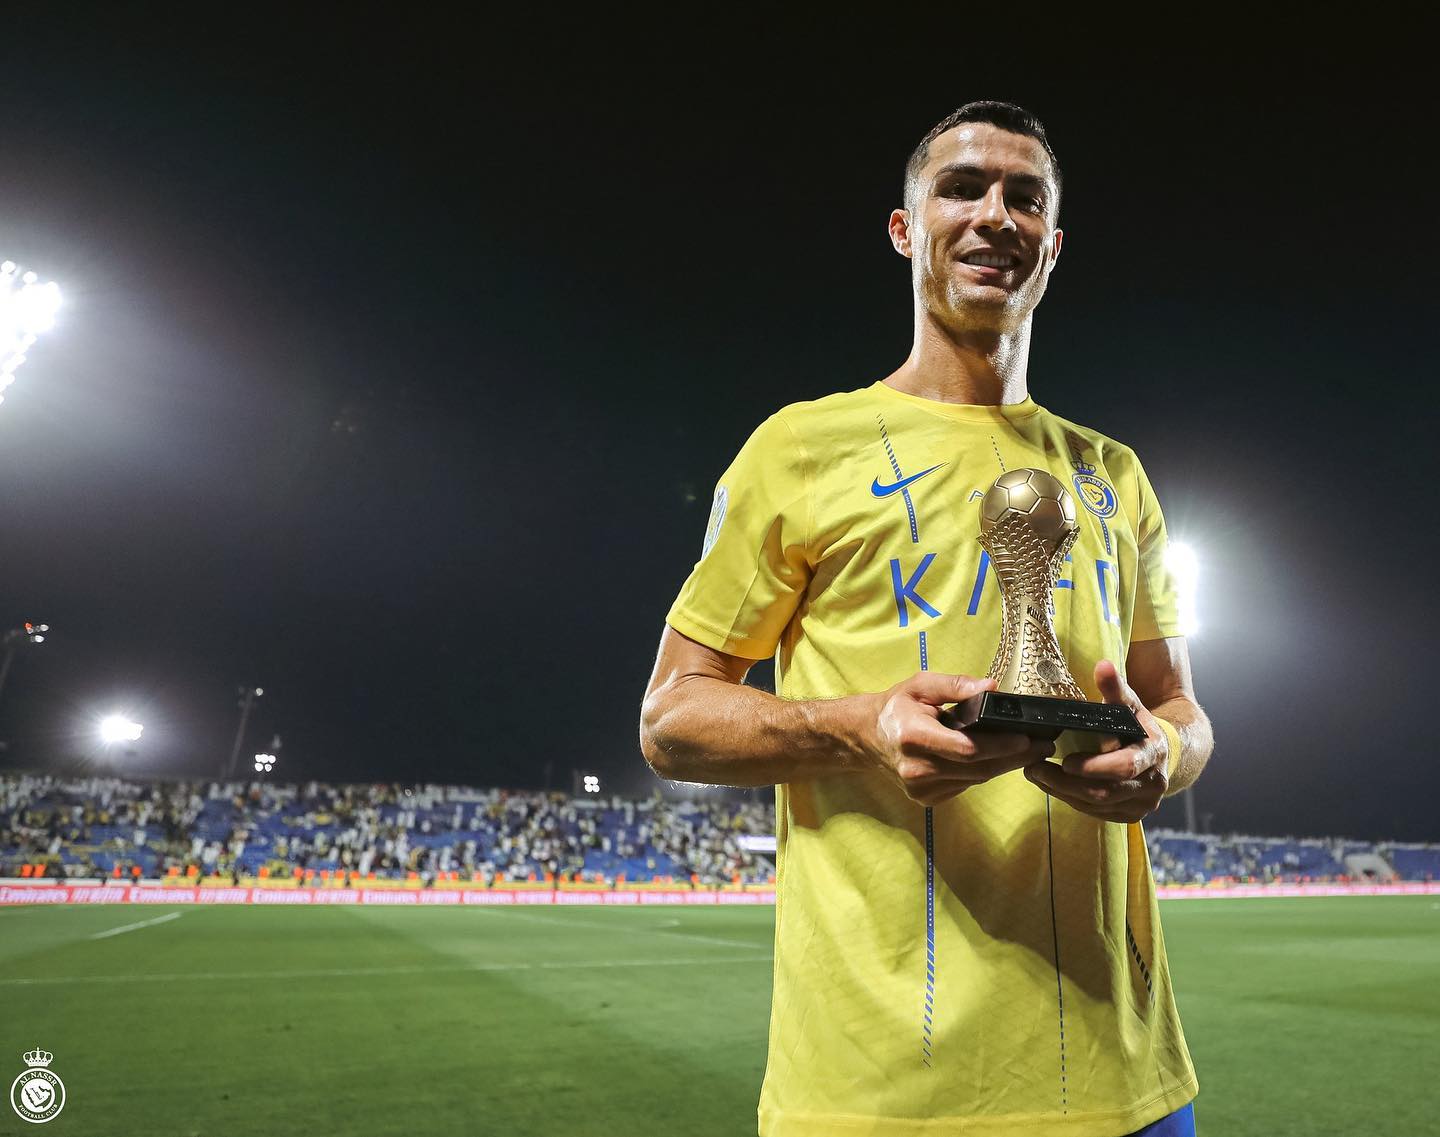 Surreal. Ronaldo pode voltar a jogar a Champions sem sair do Al Nassr